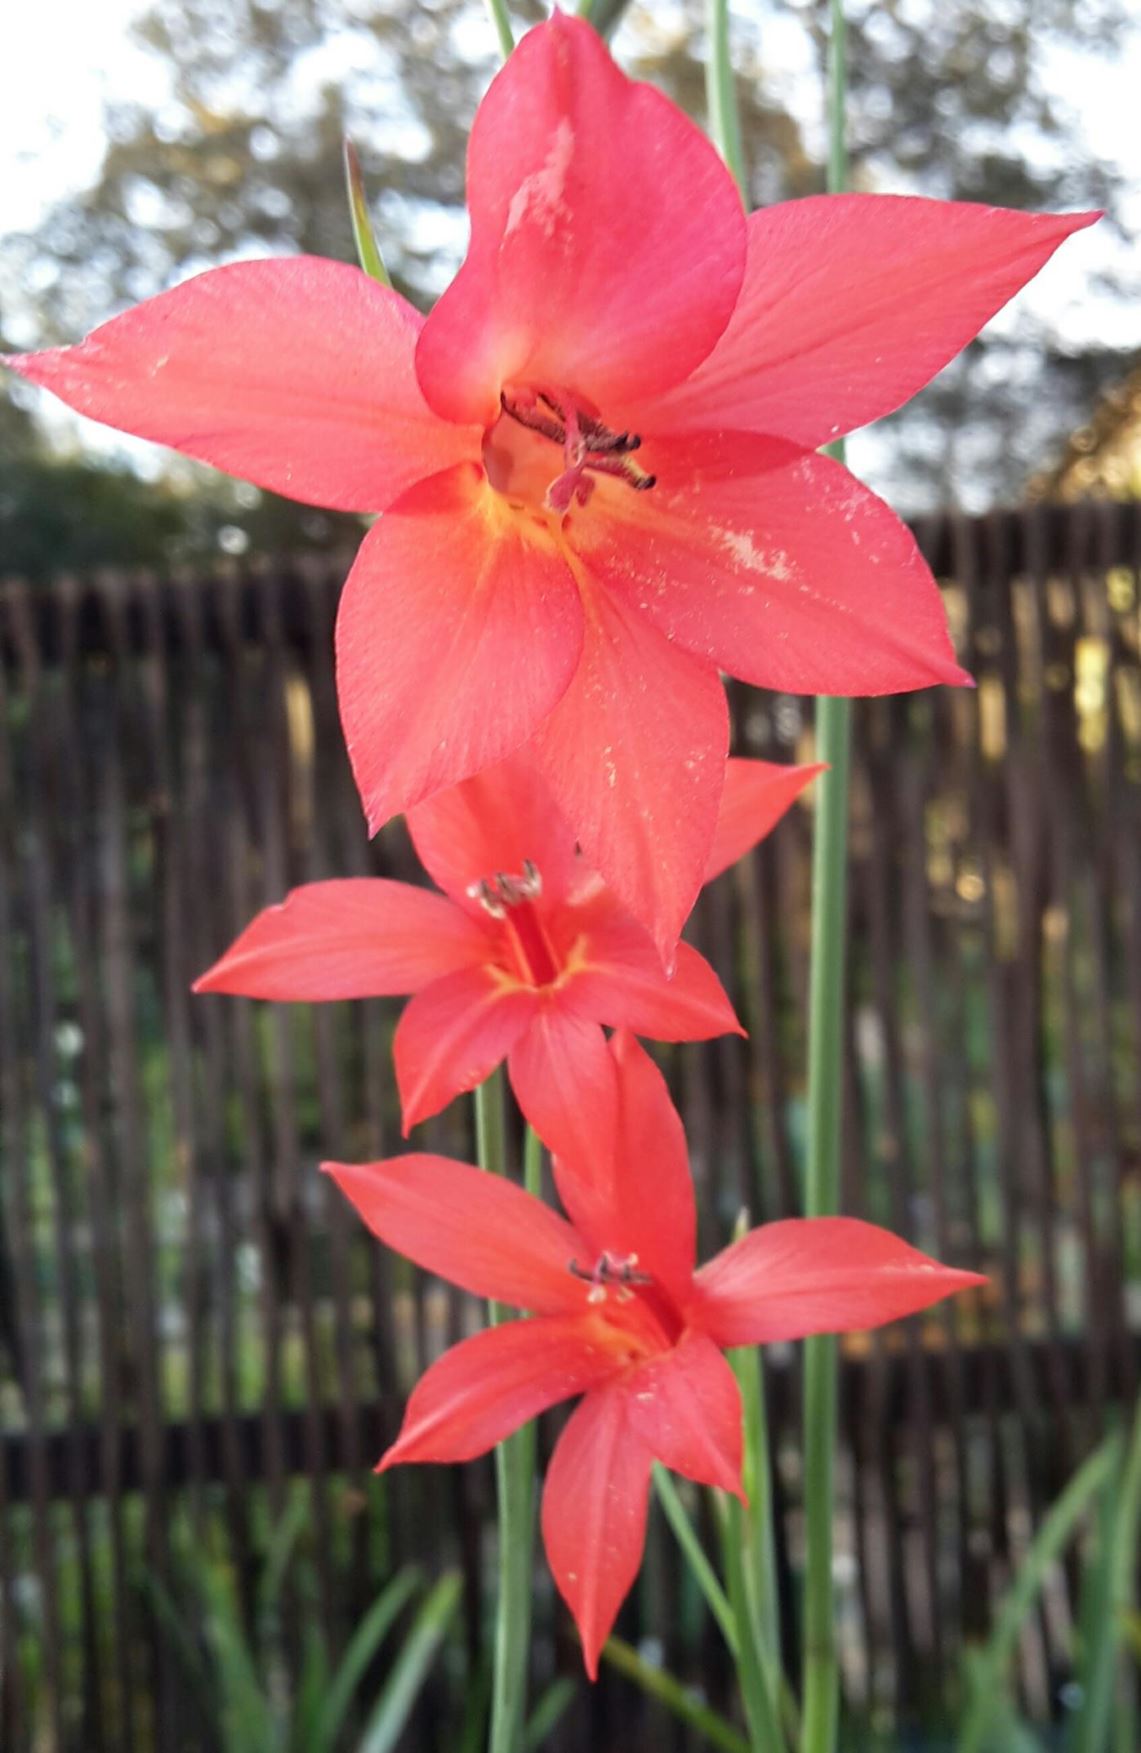 Gladiolus priorii - Gladiolus